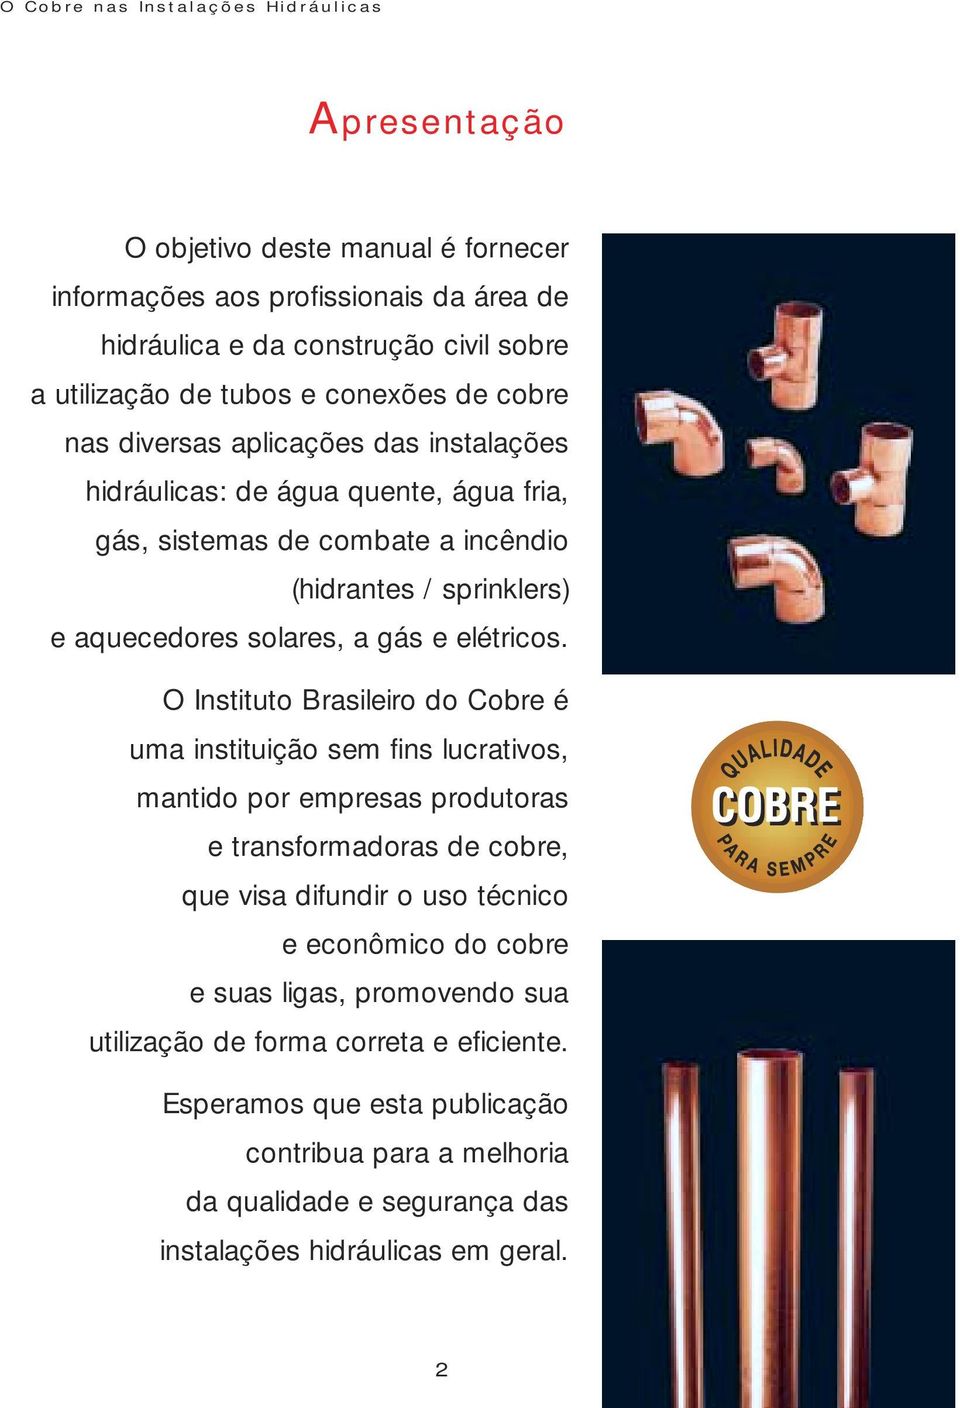 O Instituto Brasileiro do Cobre é uma instituição sem fins lucrativos, mantido por empresas produtoras e transformadoras de cobre, que visa difundir o uso técnico e econômico do